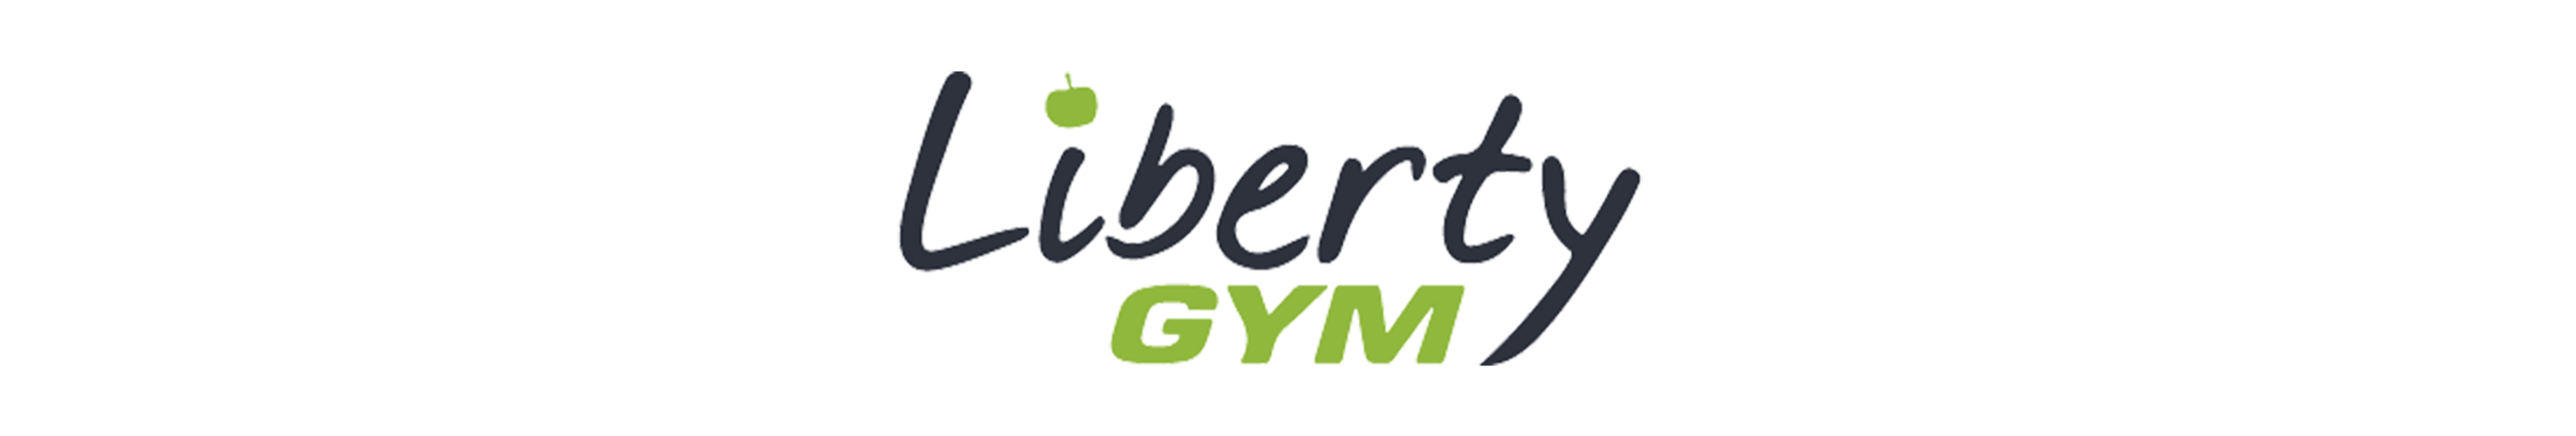 Liberty Gym Epinal